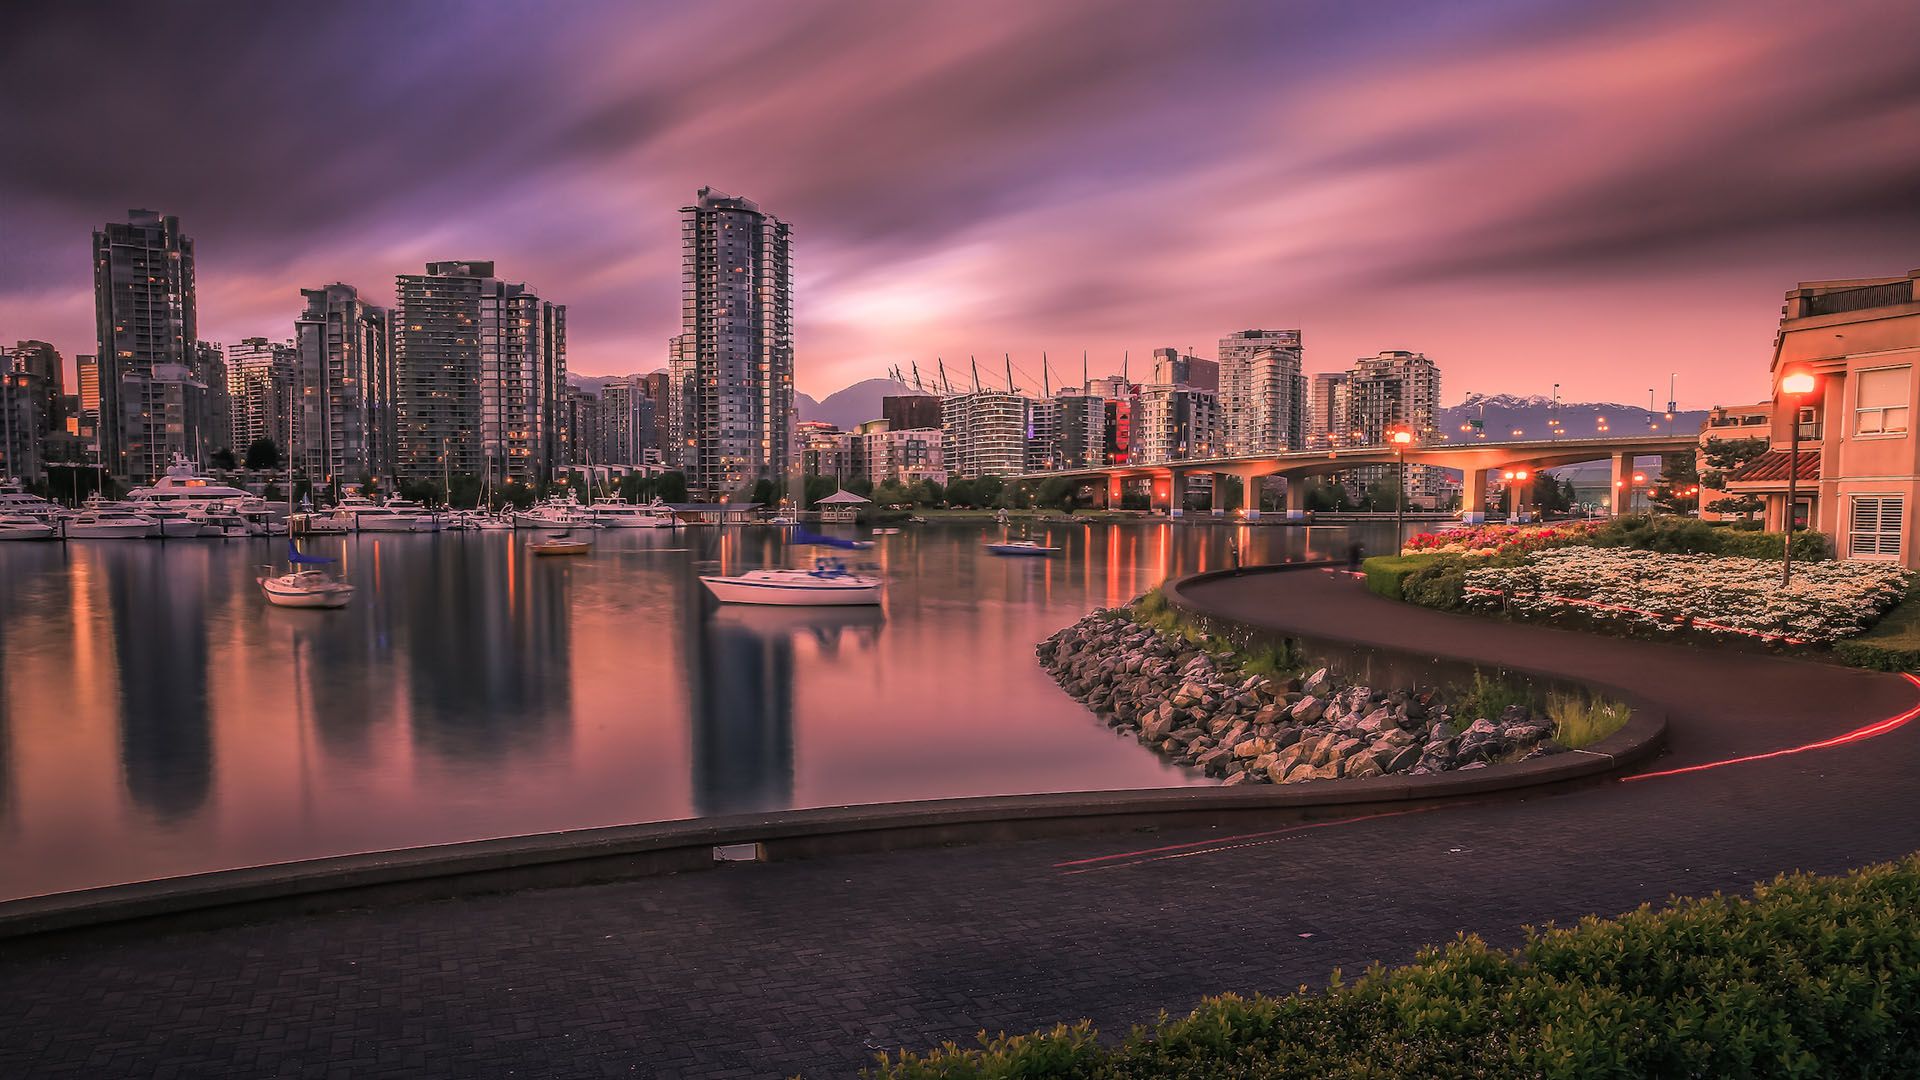 加拿大温哥华城市风景图片桌面壁纸,分辨率:1920x1200